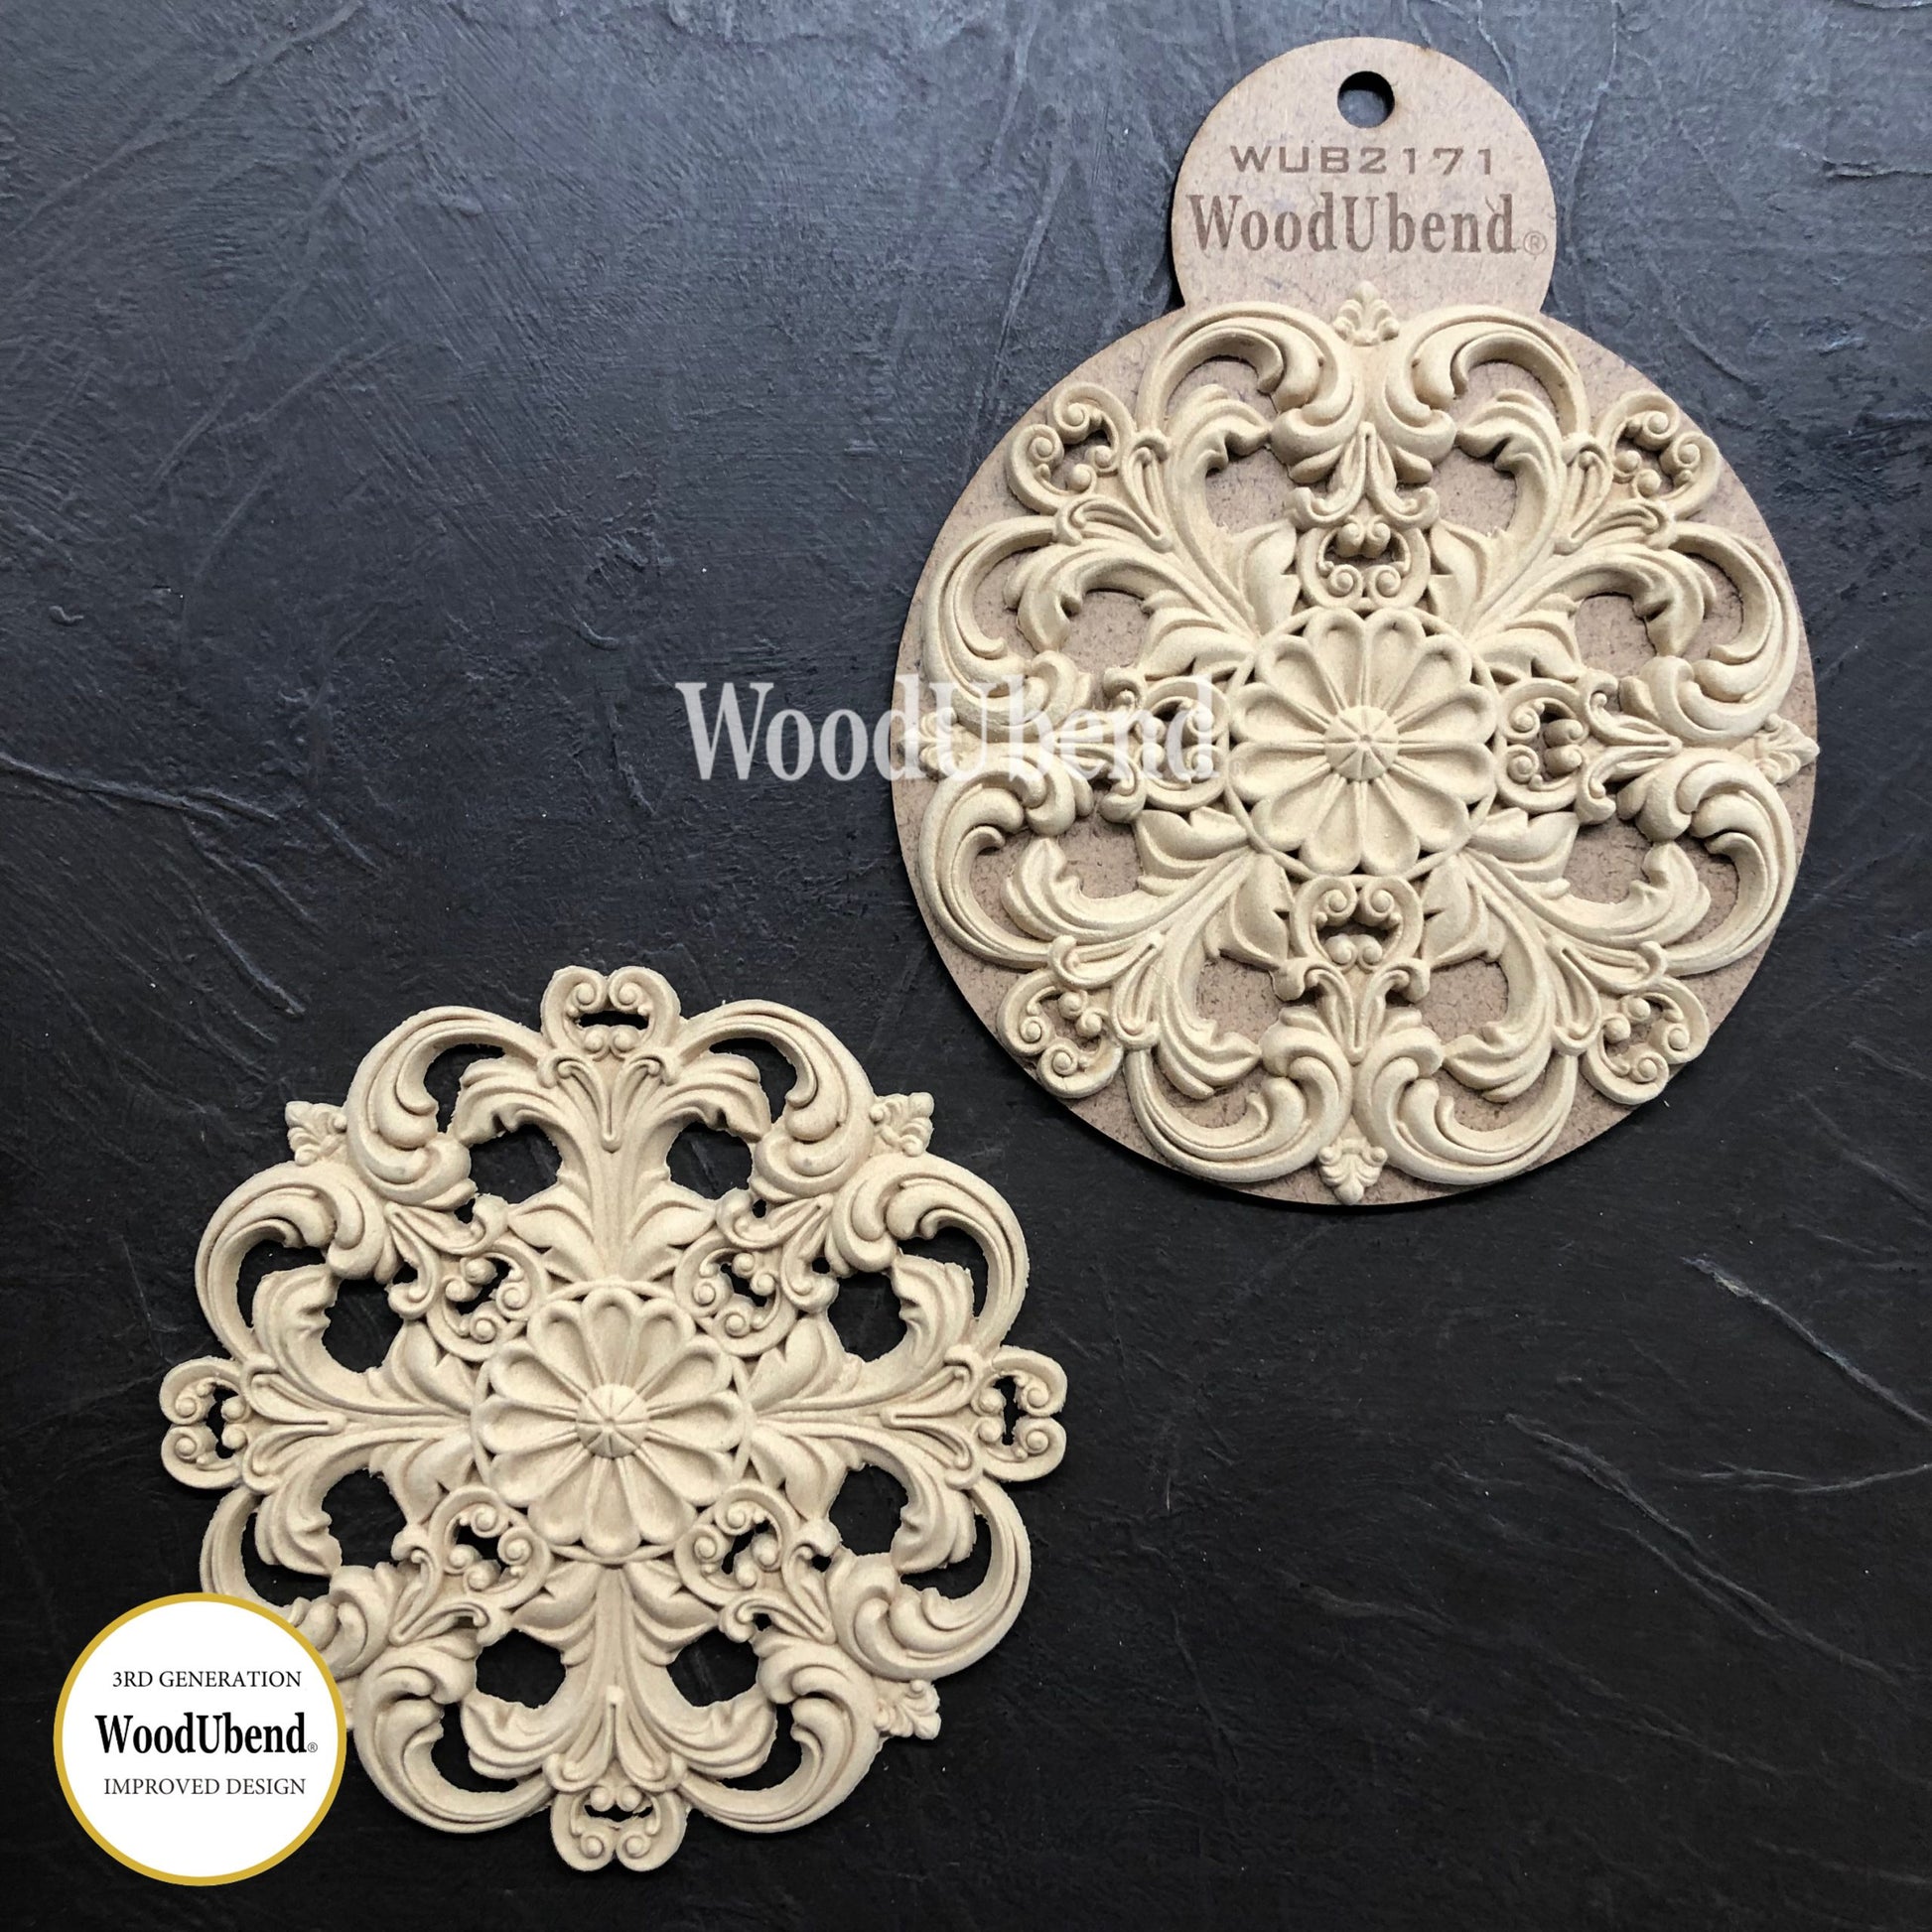 Pakket van 2 barok centerpieces (14cm) - WUB2171 Woodubend